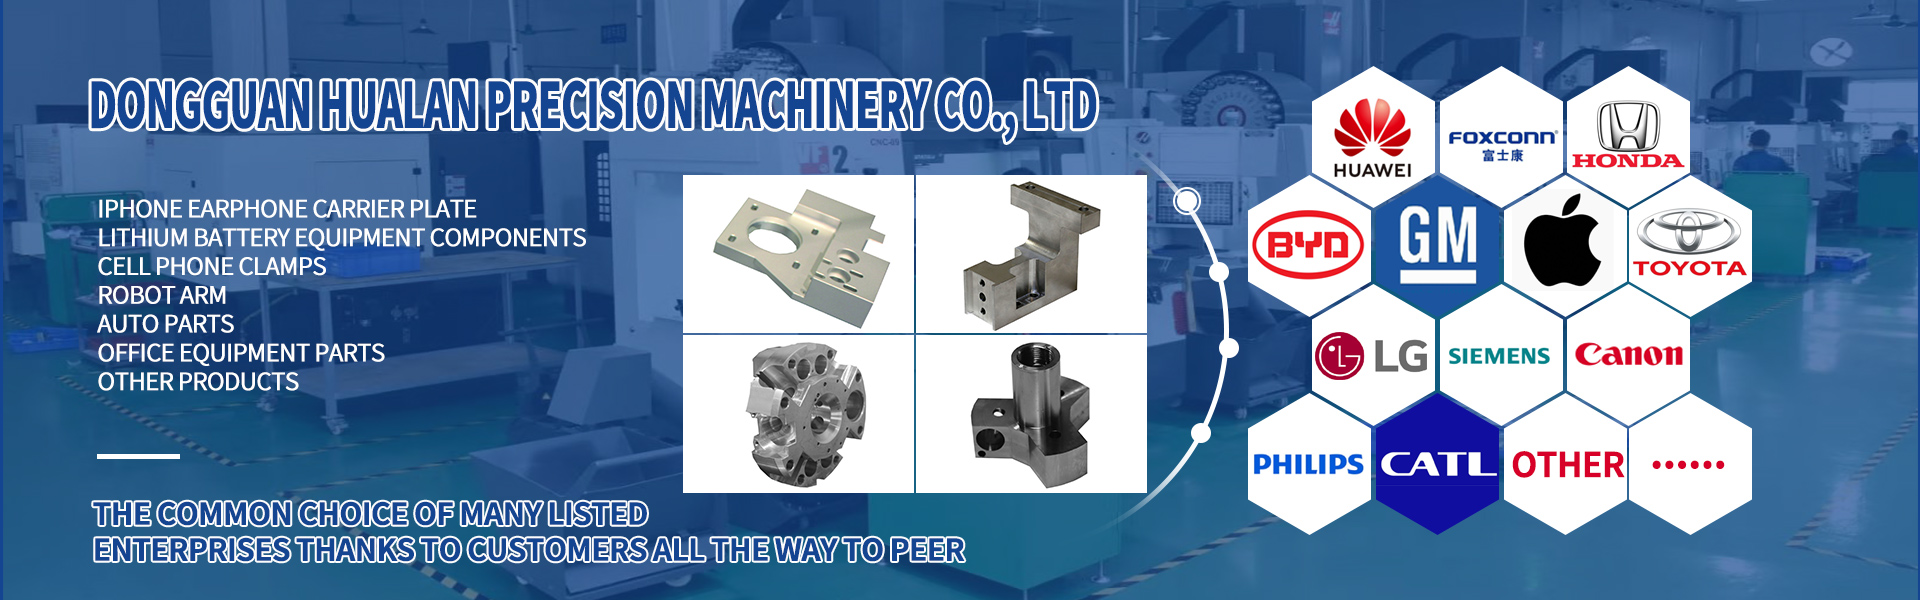 Pièces d\'usinage CNC, Turing et Fraisage, coupe de ligne,Dongguan Hualan Precision Machinery Co., LTD